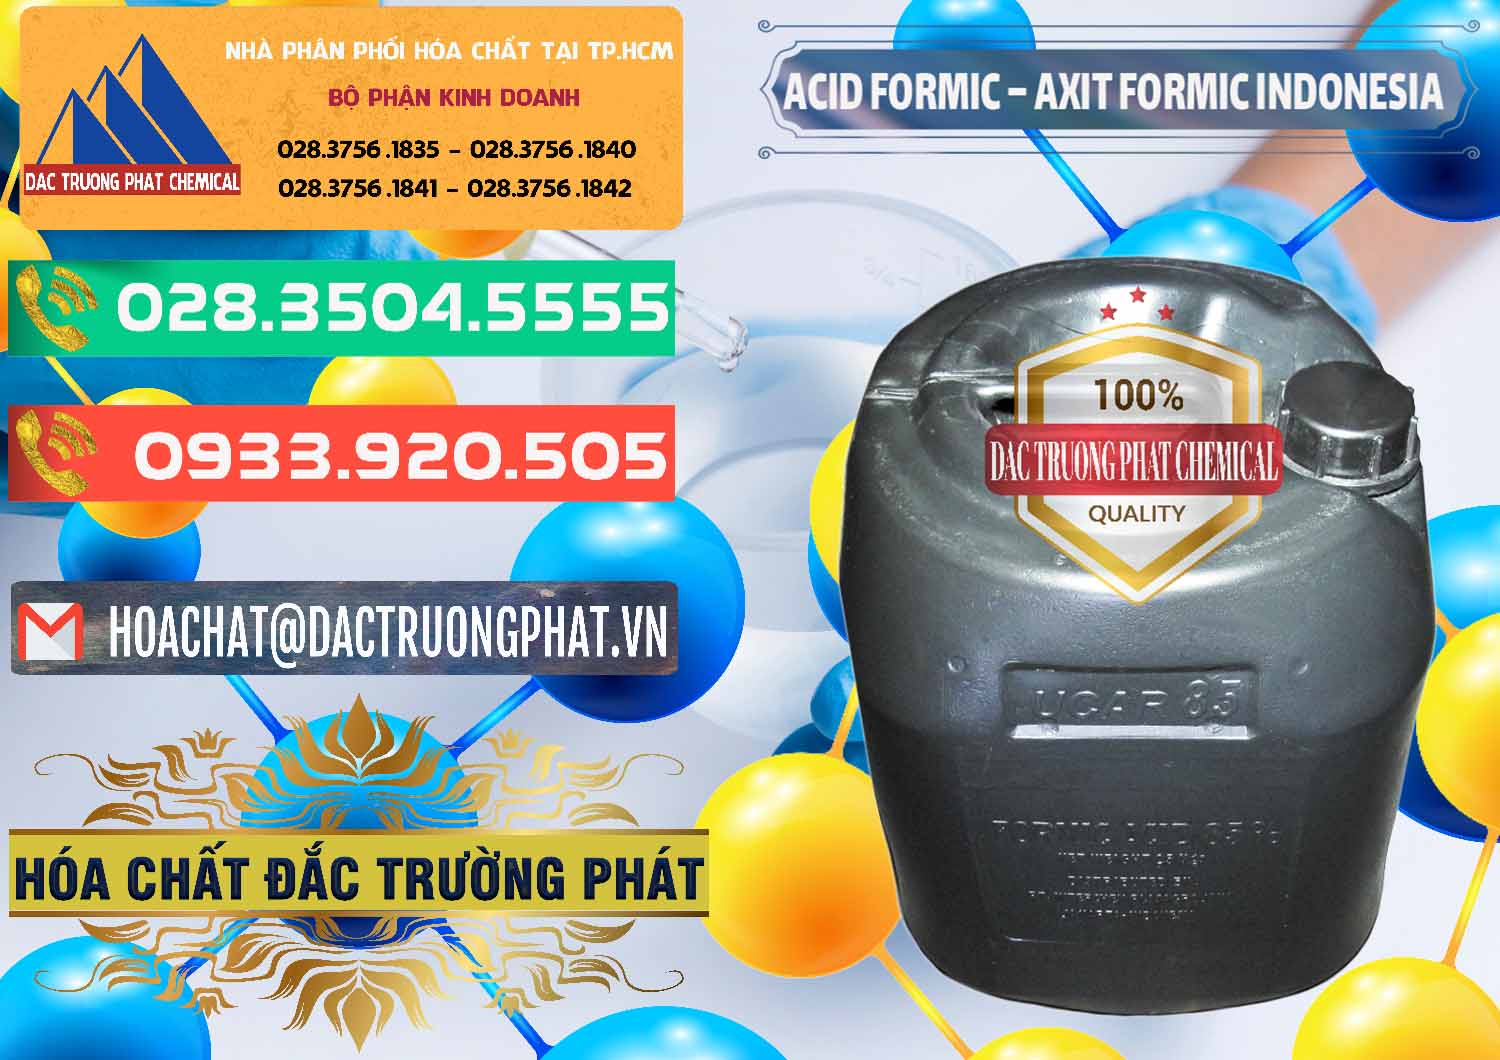 Cty chuyên nhập khẩu ( bán ) Acid Formic - Axit Formic Indonesia - 0026 - Cty bán ( cung cấp ) hóa chất tại TP.HCM - congtyhoachat.com.vn